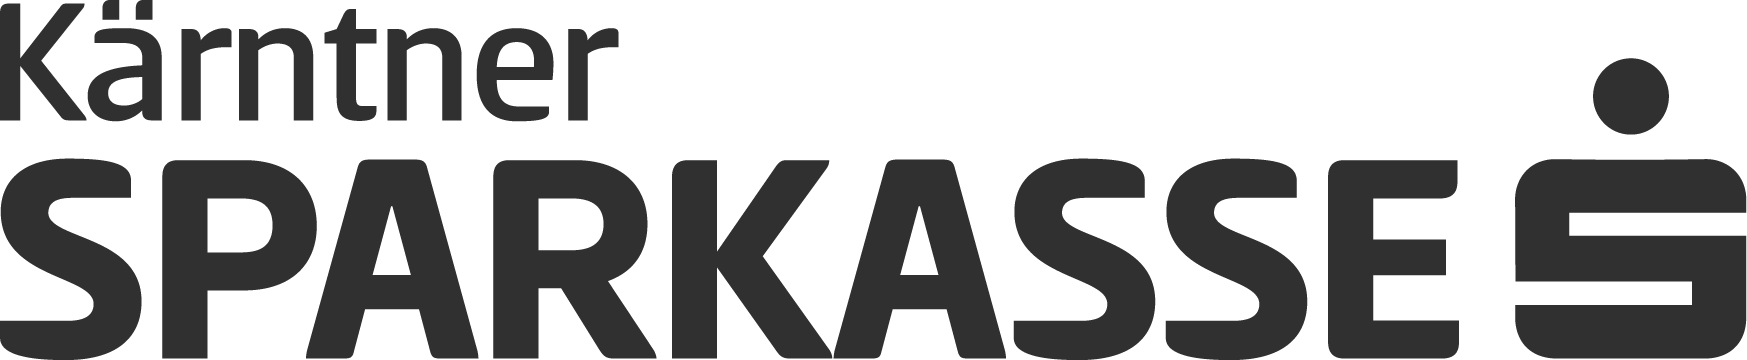 SPK-Kaerntner_Logo_screen_anthracite